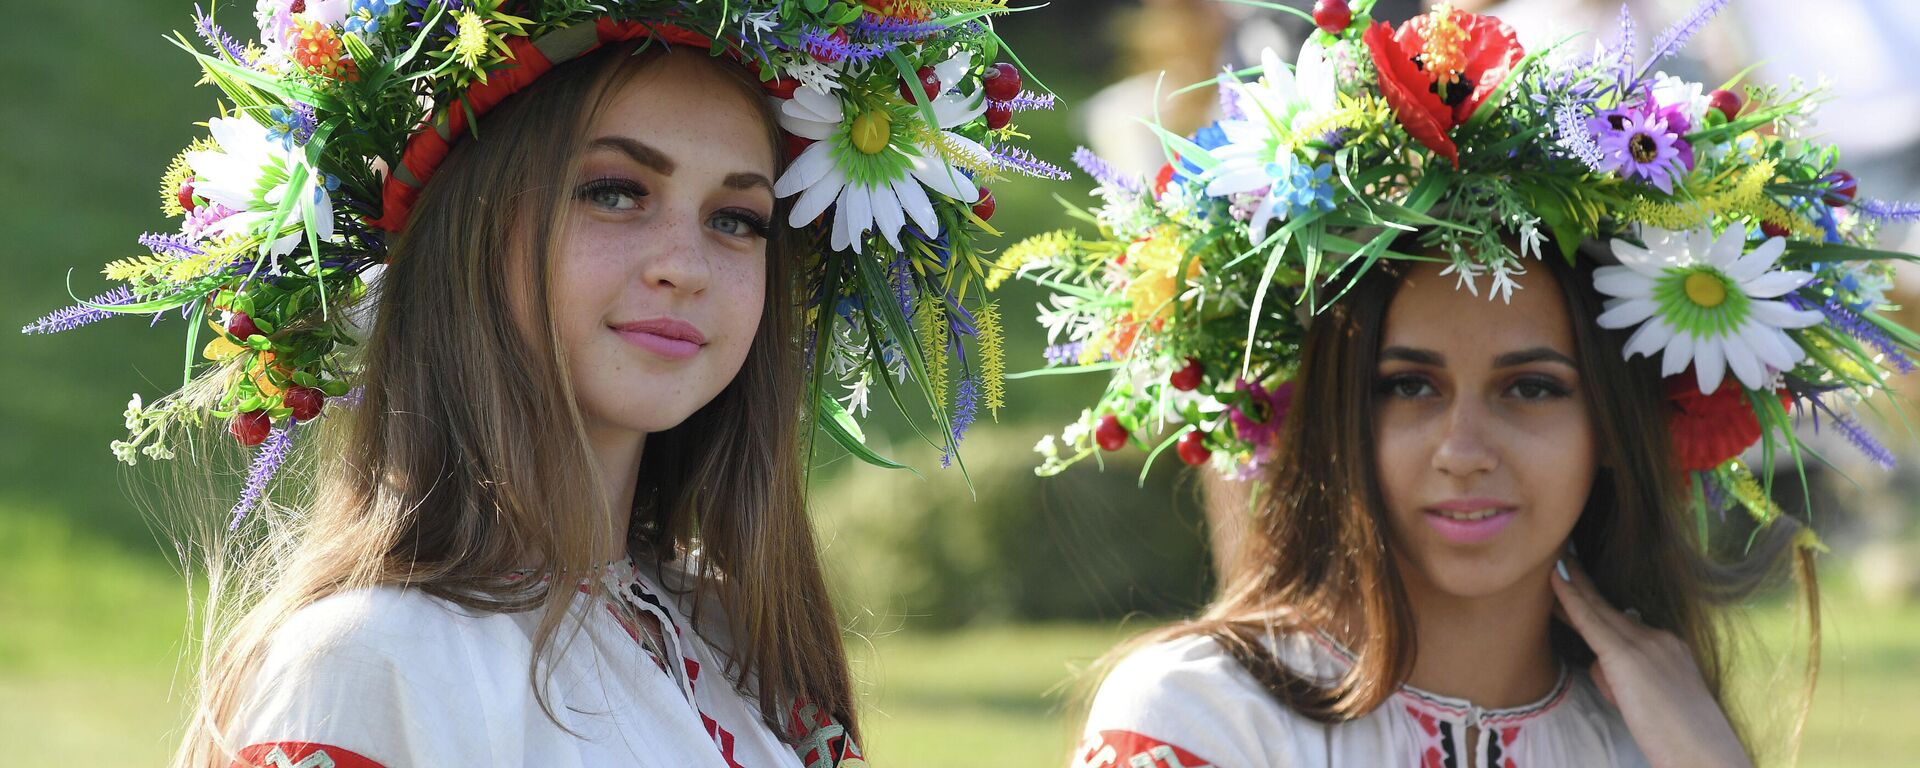 Unas chicas ucranianas (imagen referencial) - Sputnik Mundo, 1920, 01.07.2021